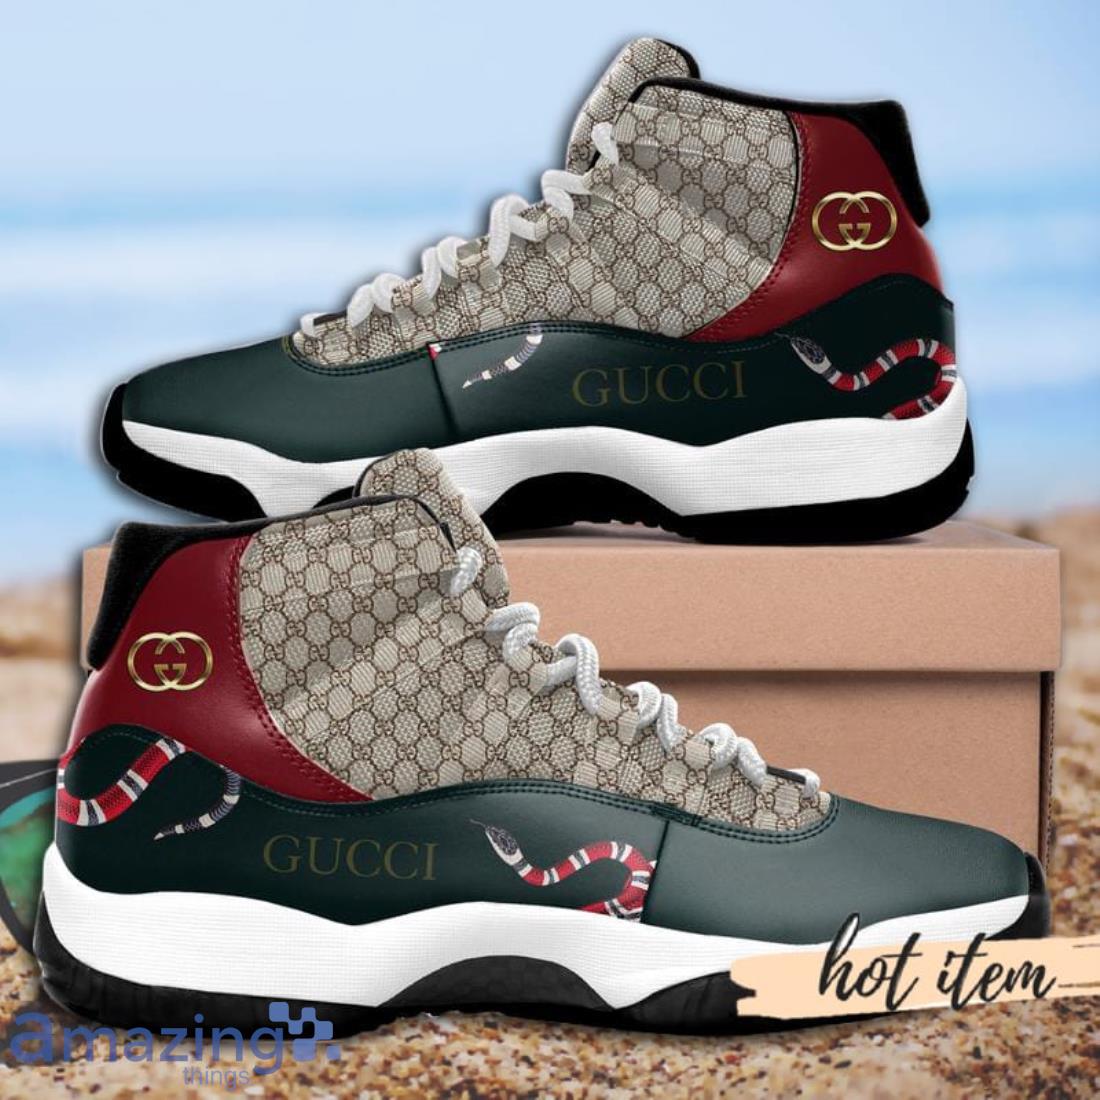 Air Jordan 11 Shoes Gucci Sneakers For Women